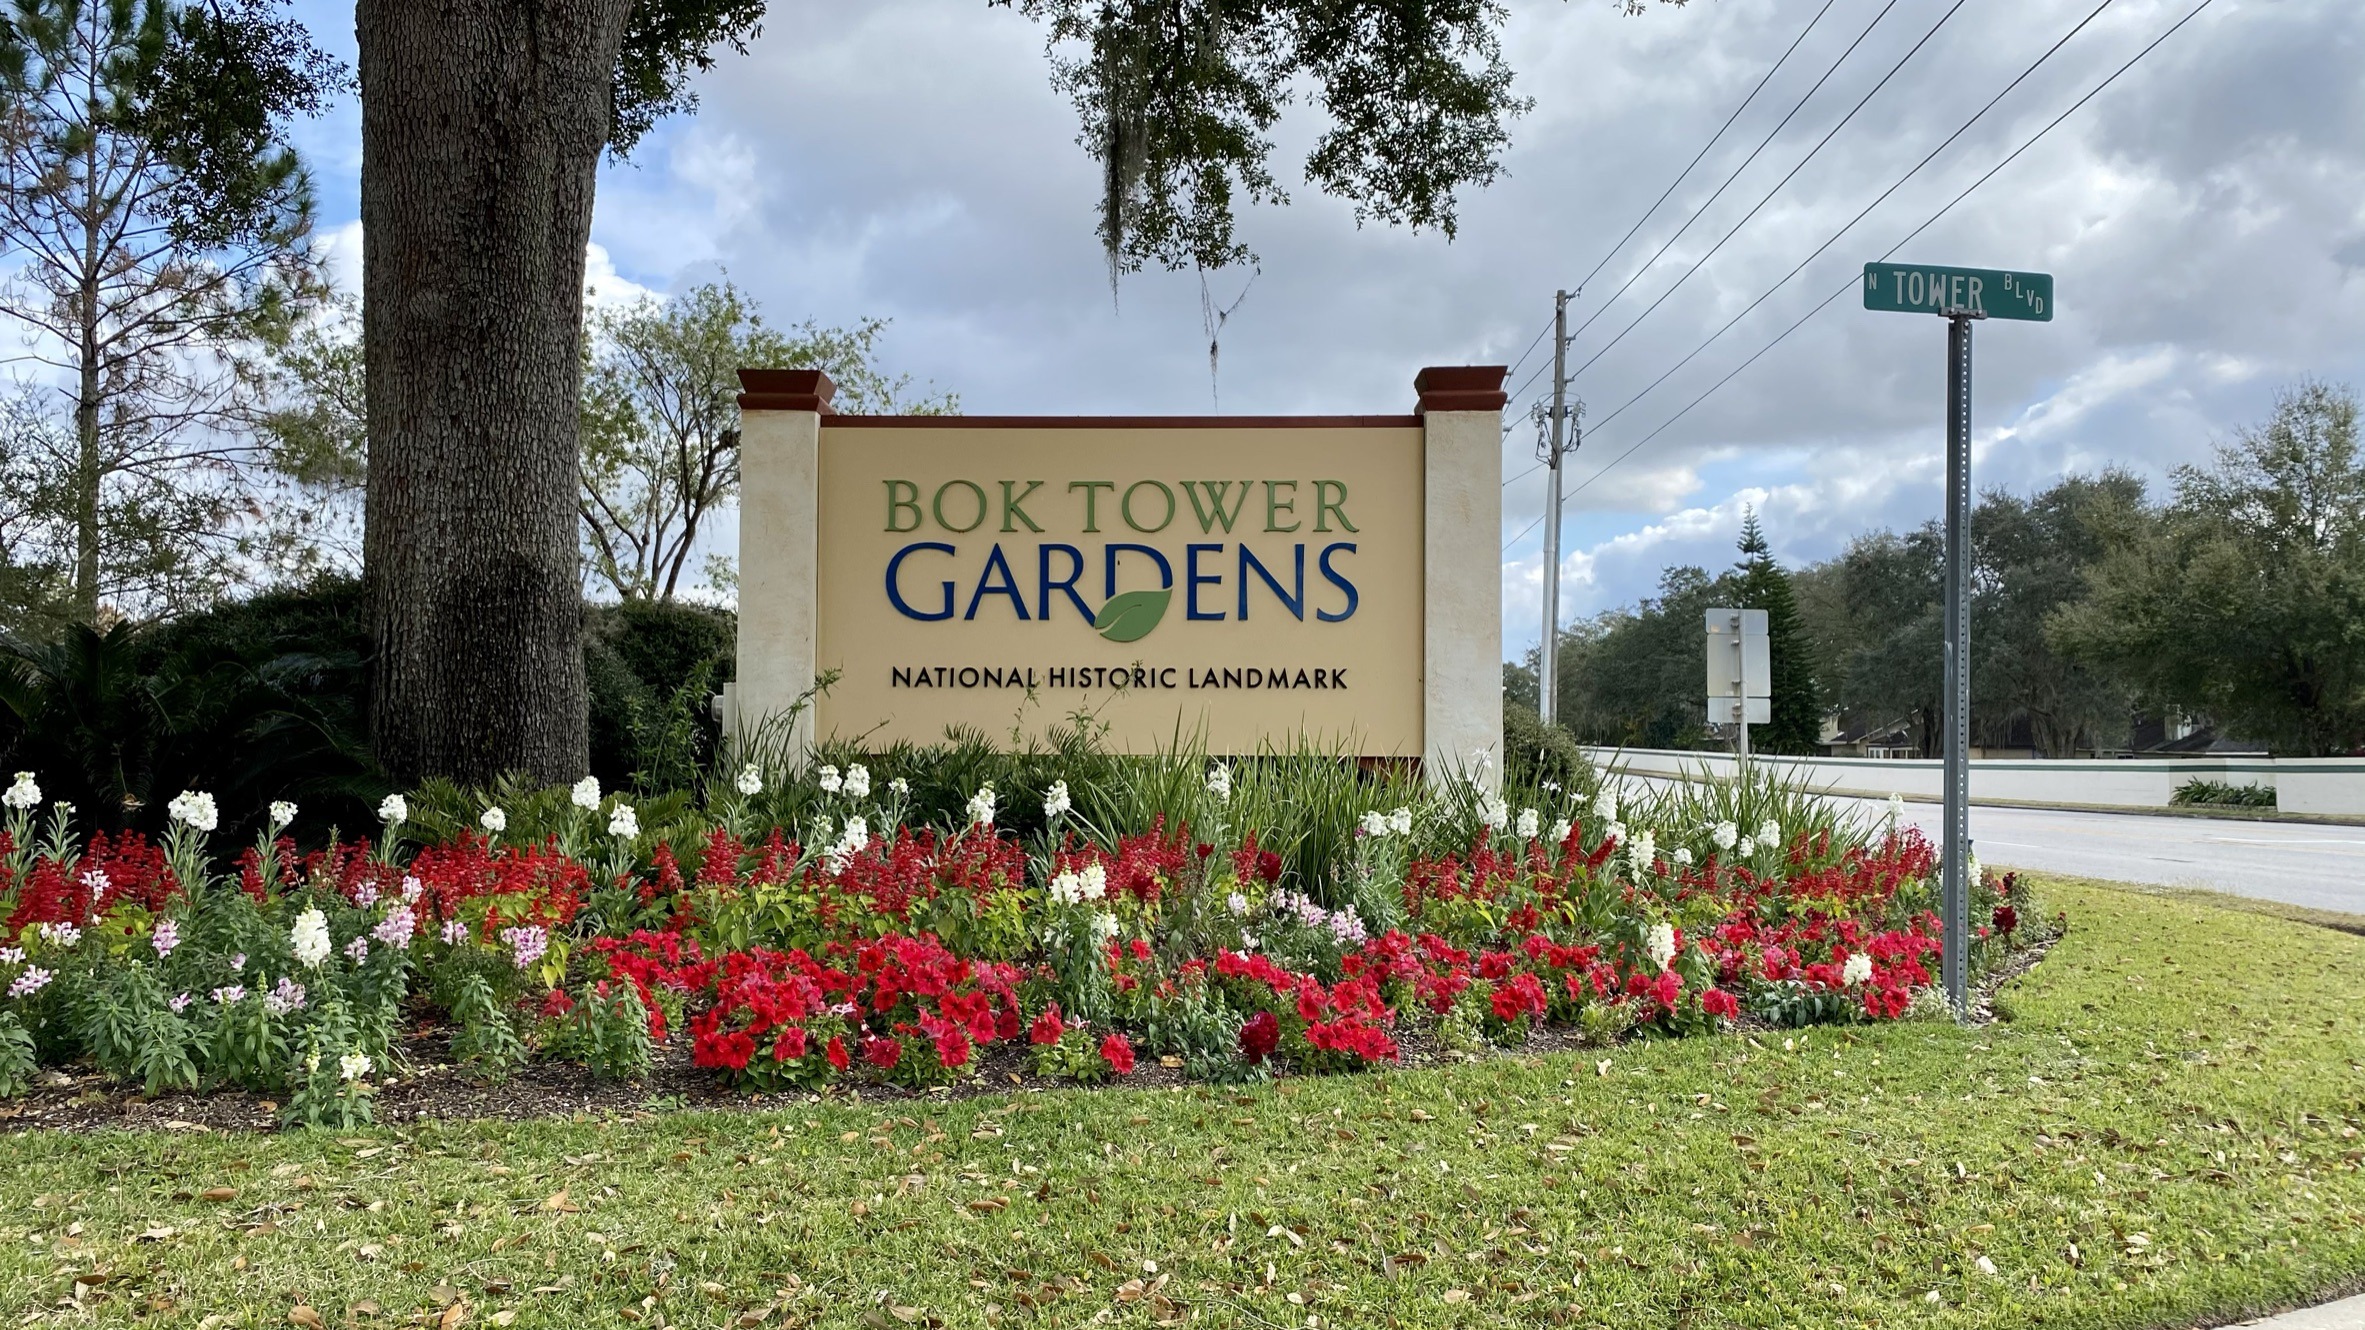 Bok gardens in florida